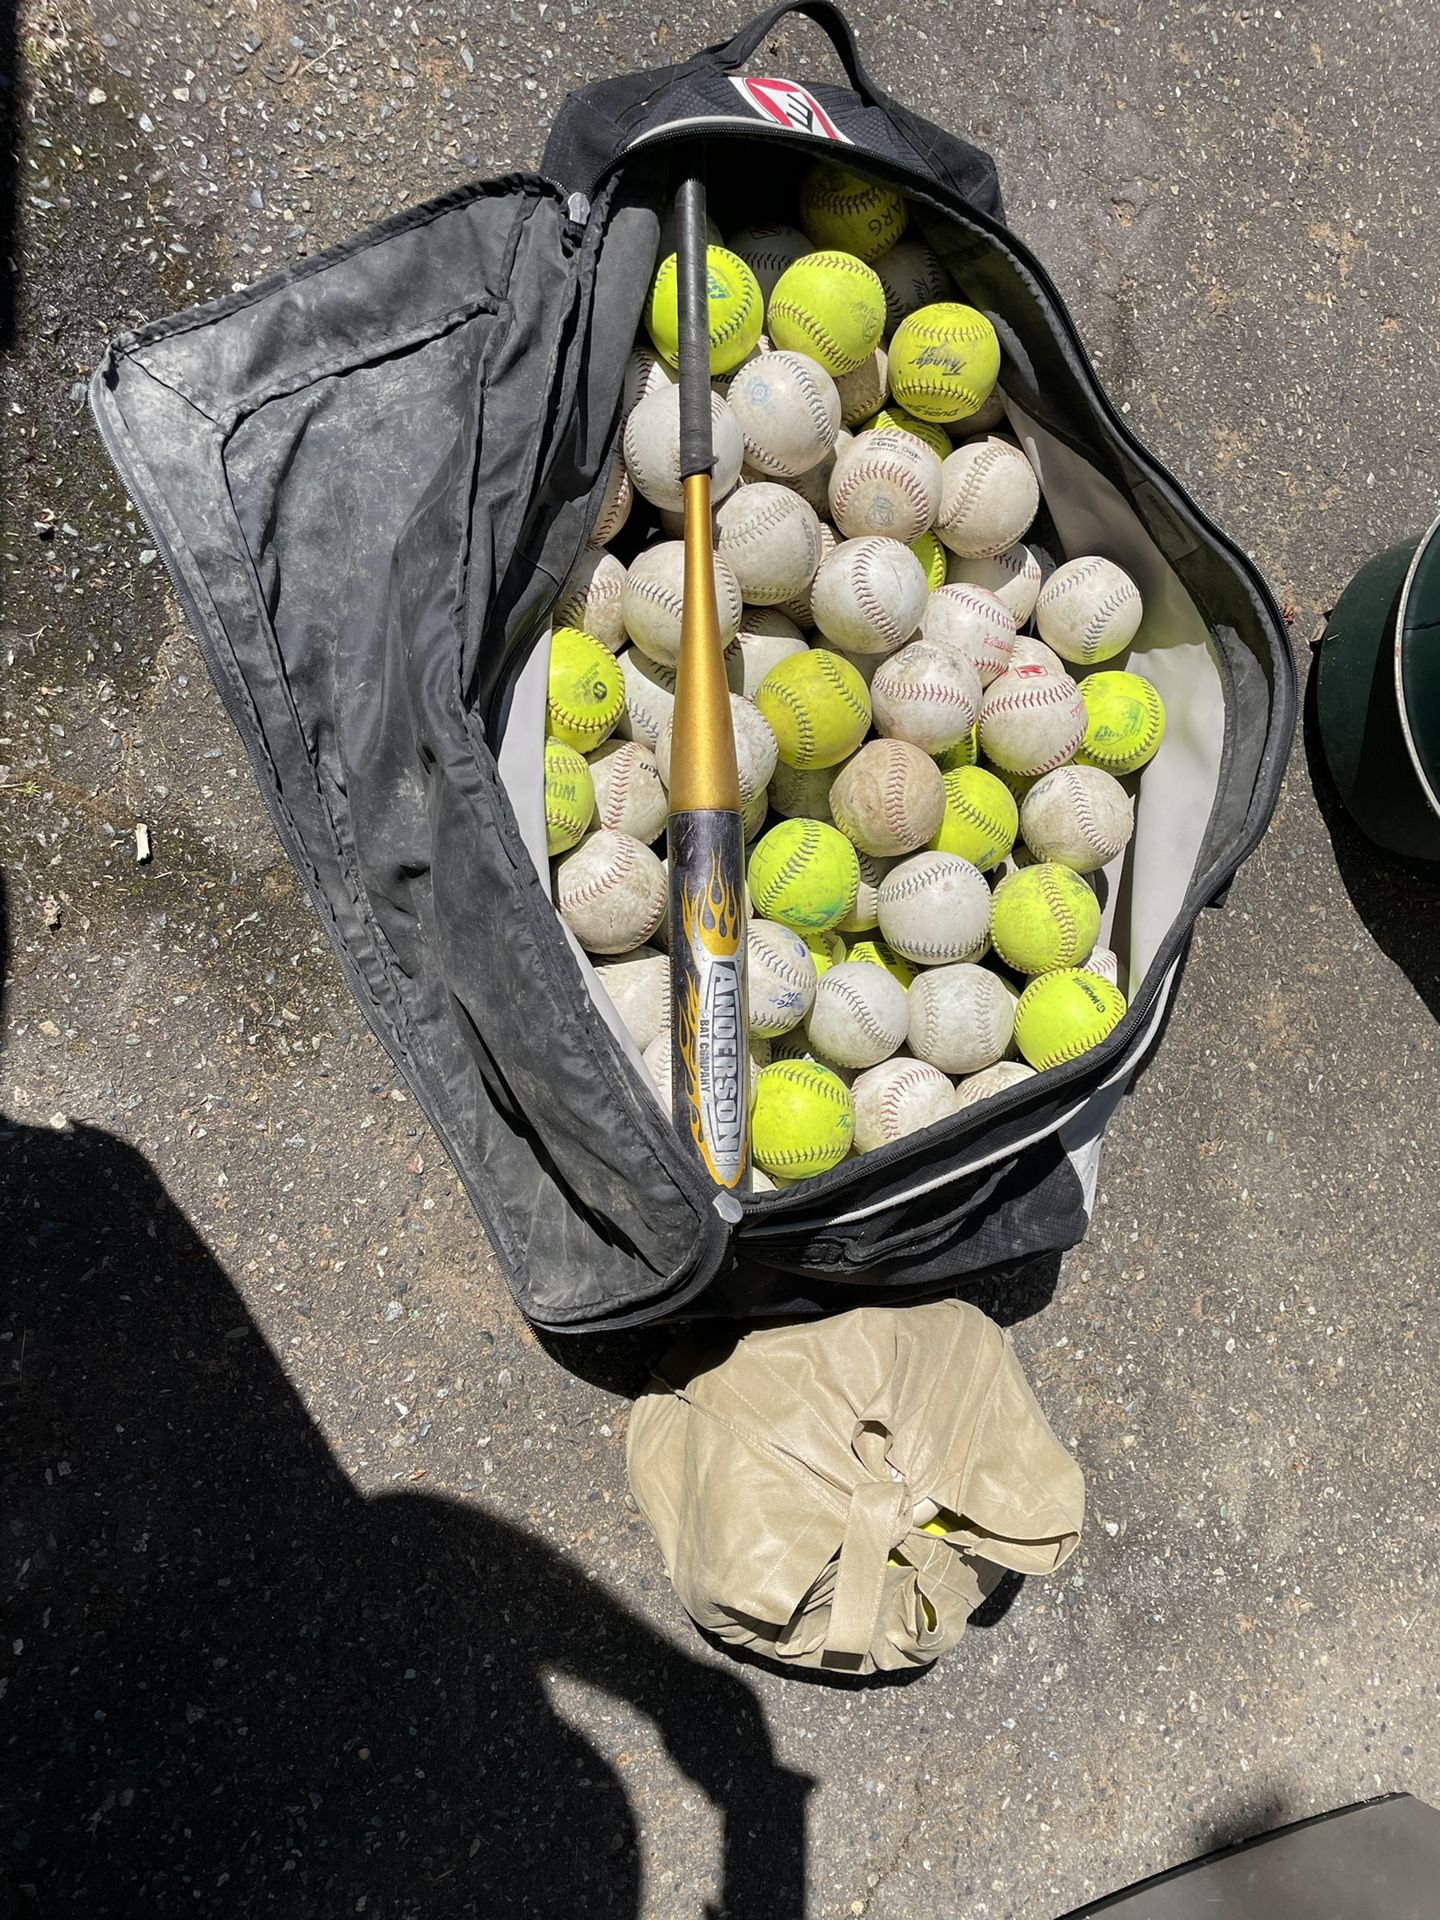 Softballs And Bag